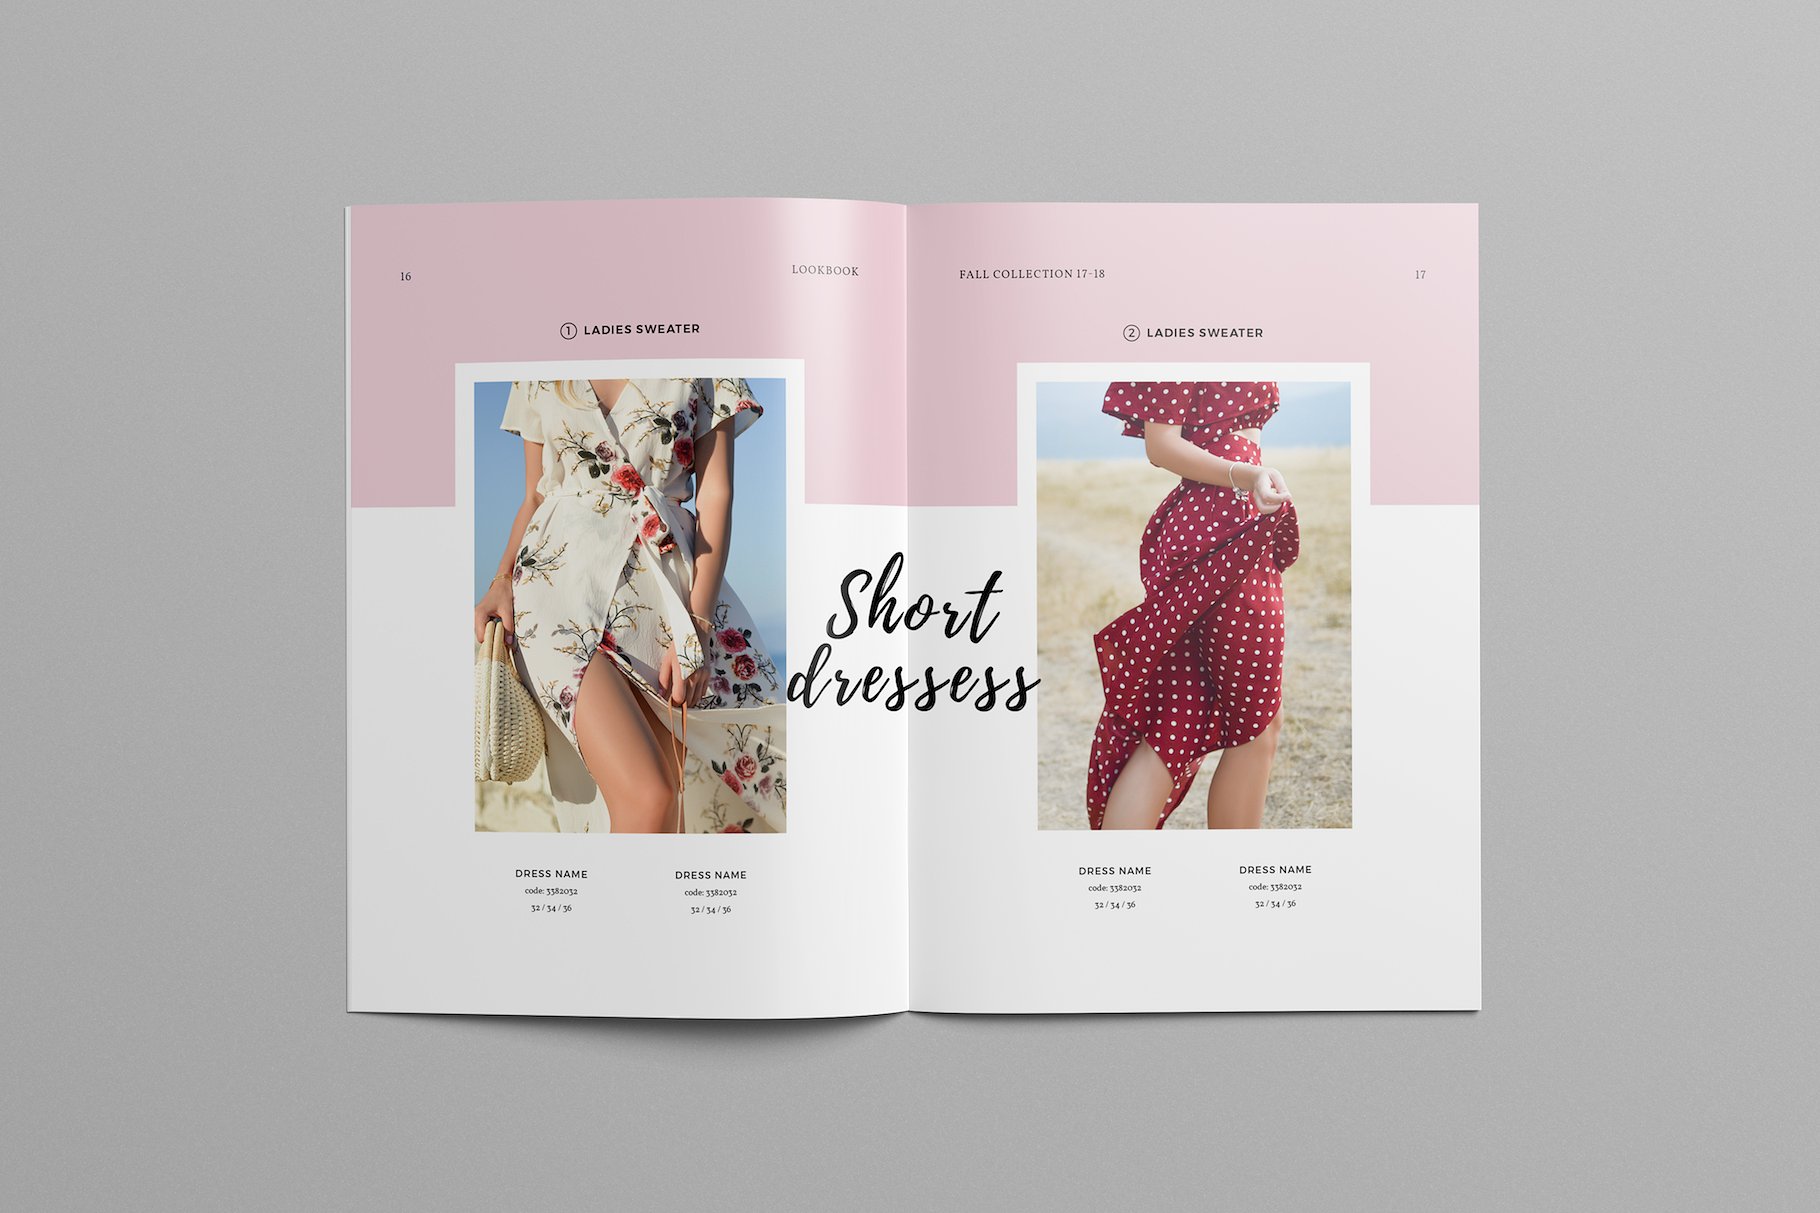 时尚极简的服装目录杂志模板下载 Fashion Catalog Lookbook Template [indd]插图(6)